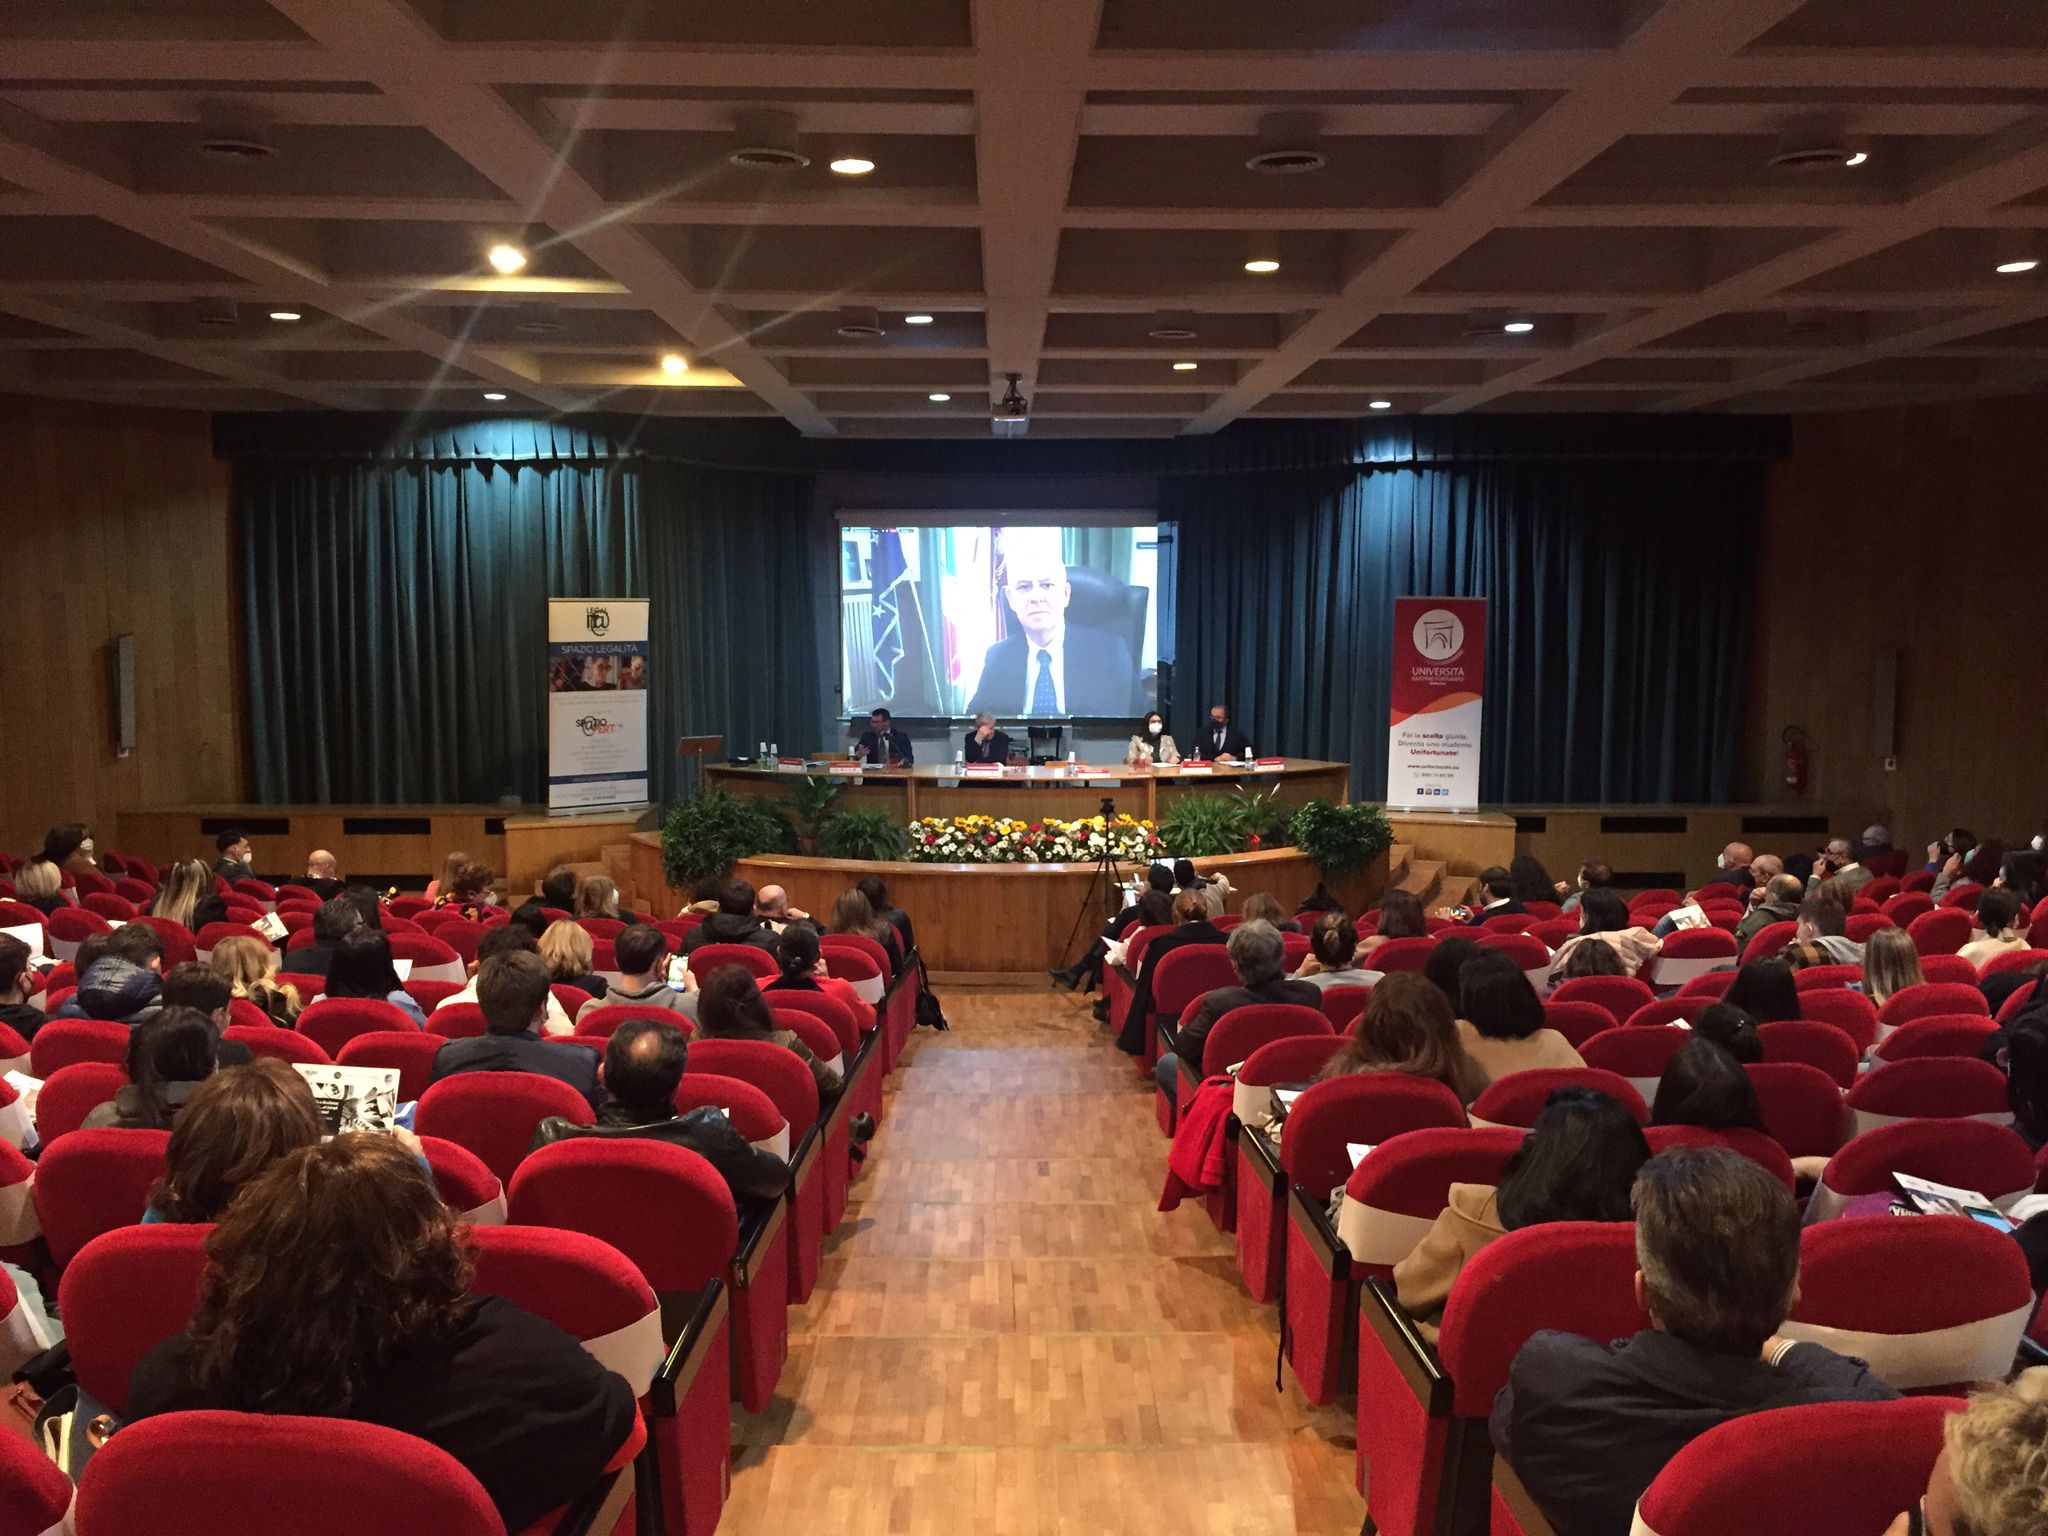 Incontri culturali, seminari e cinema a Benevento